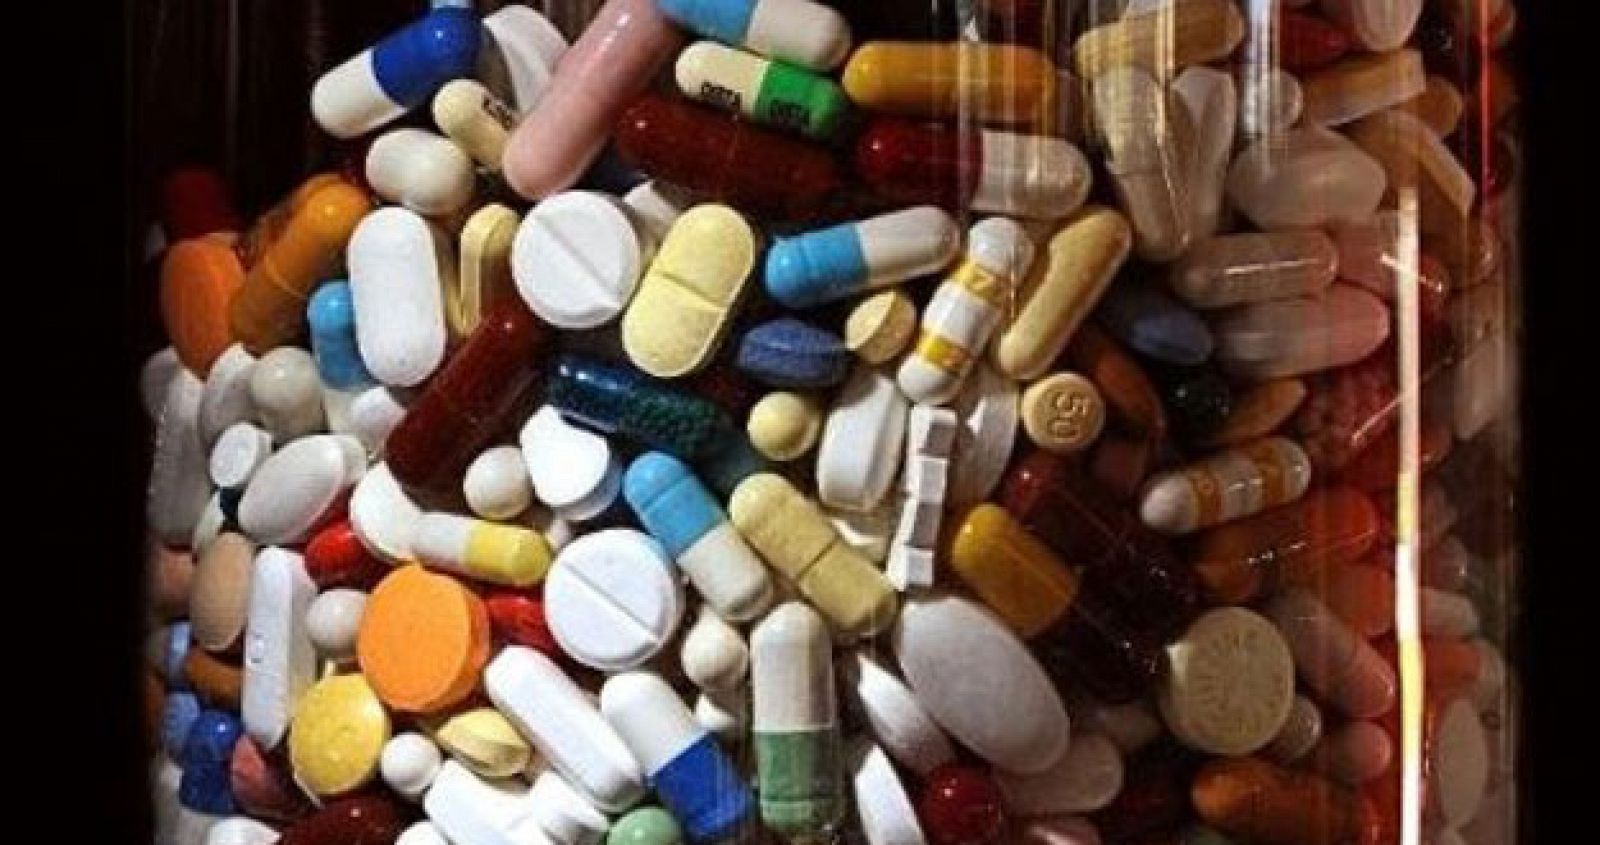 Detalle de un recipiente con diferentes tipos de pastillas